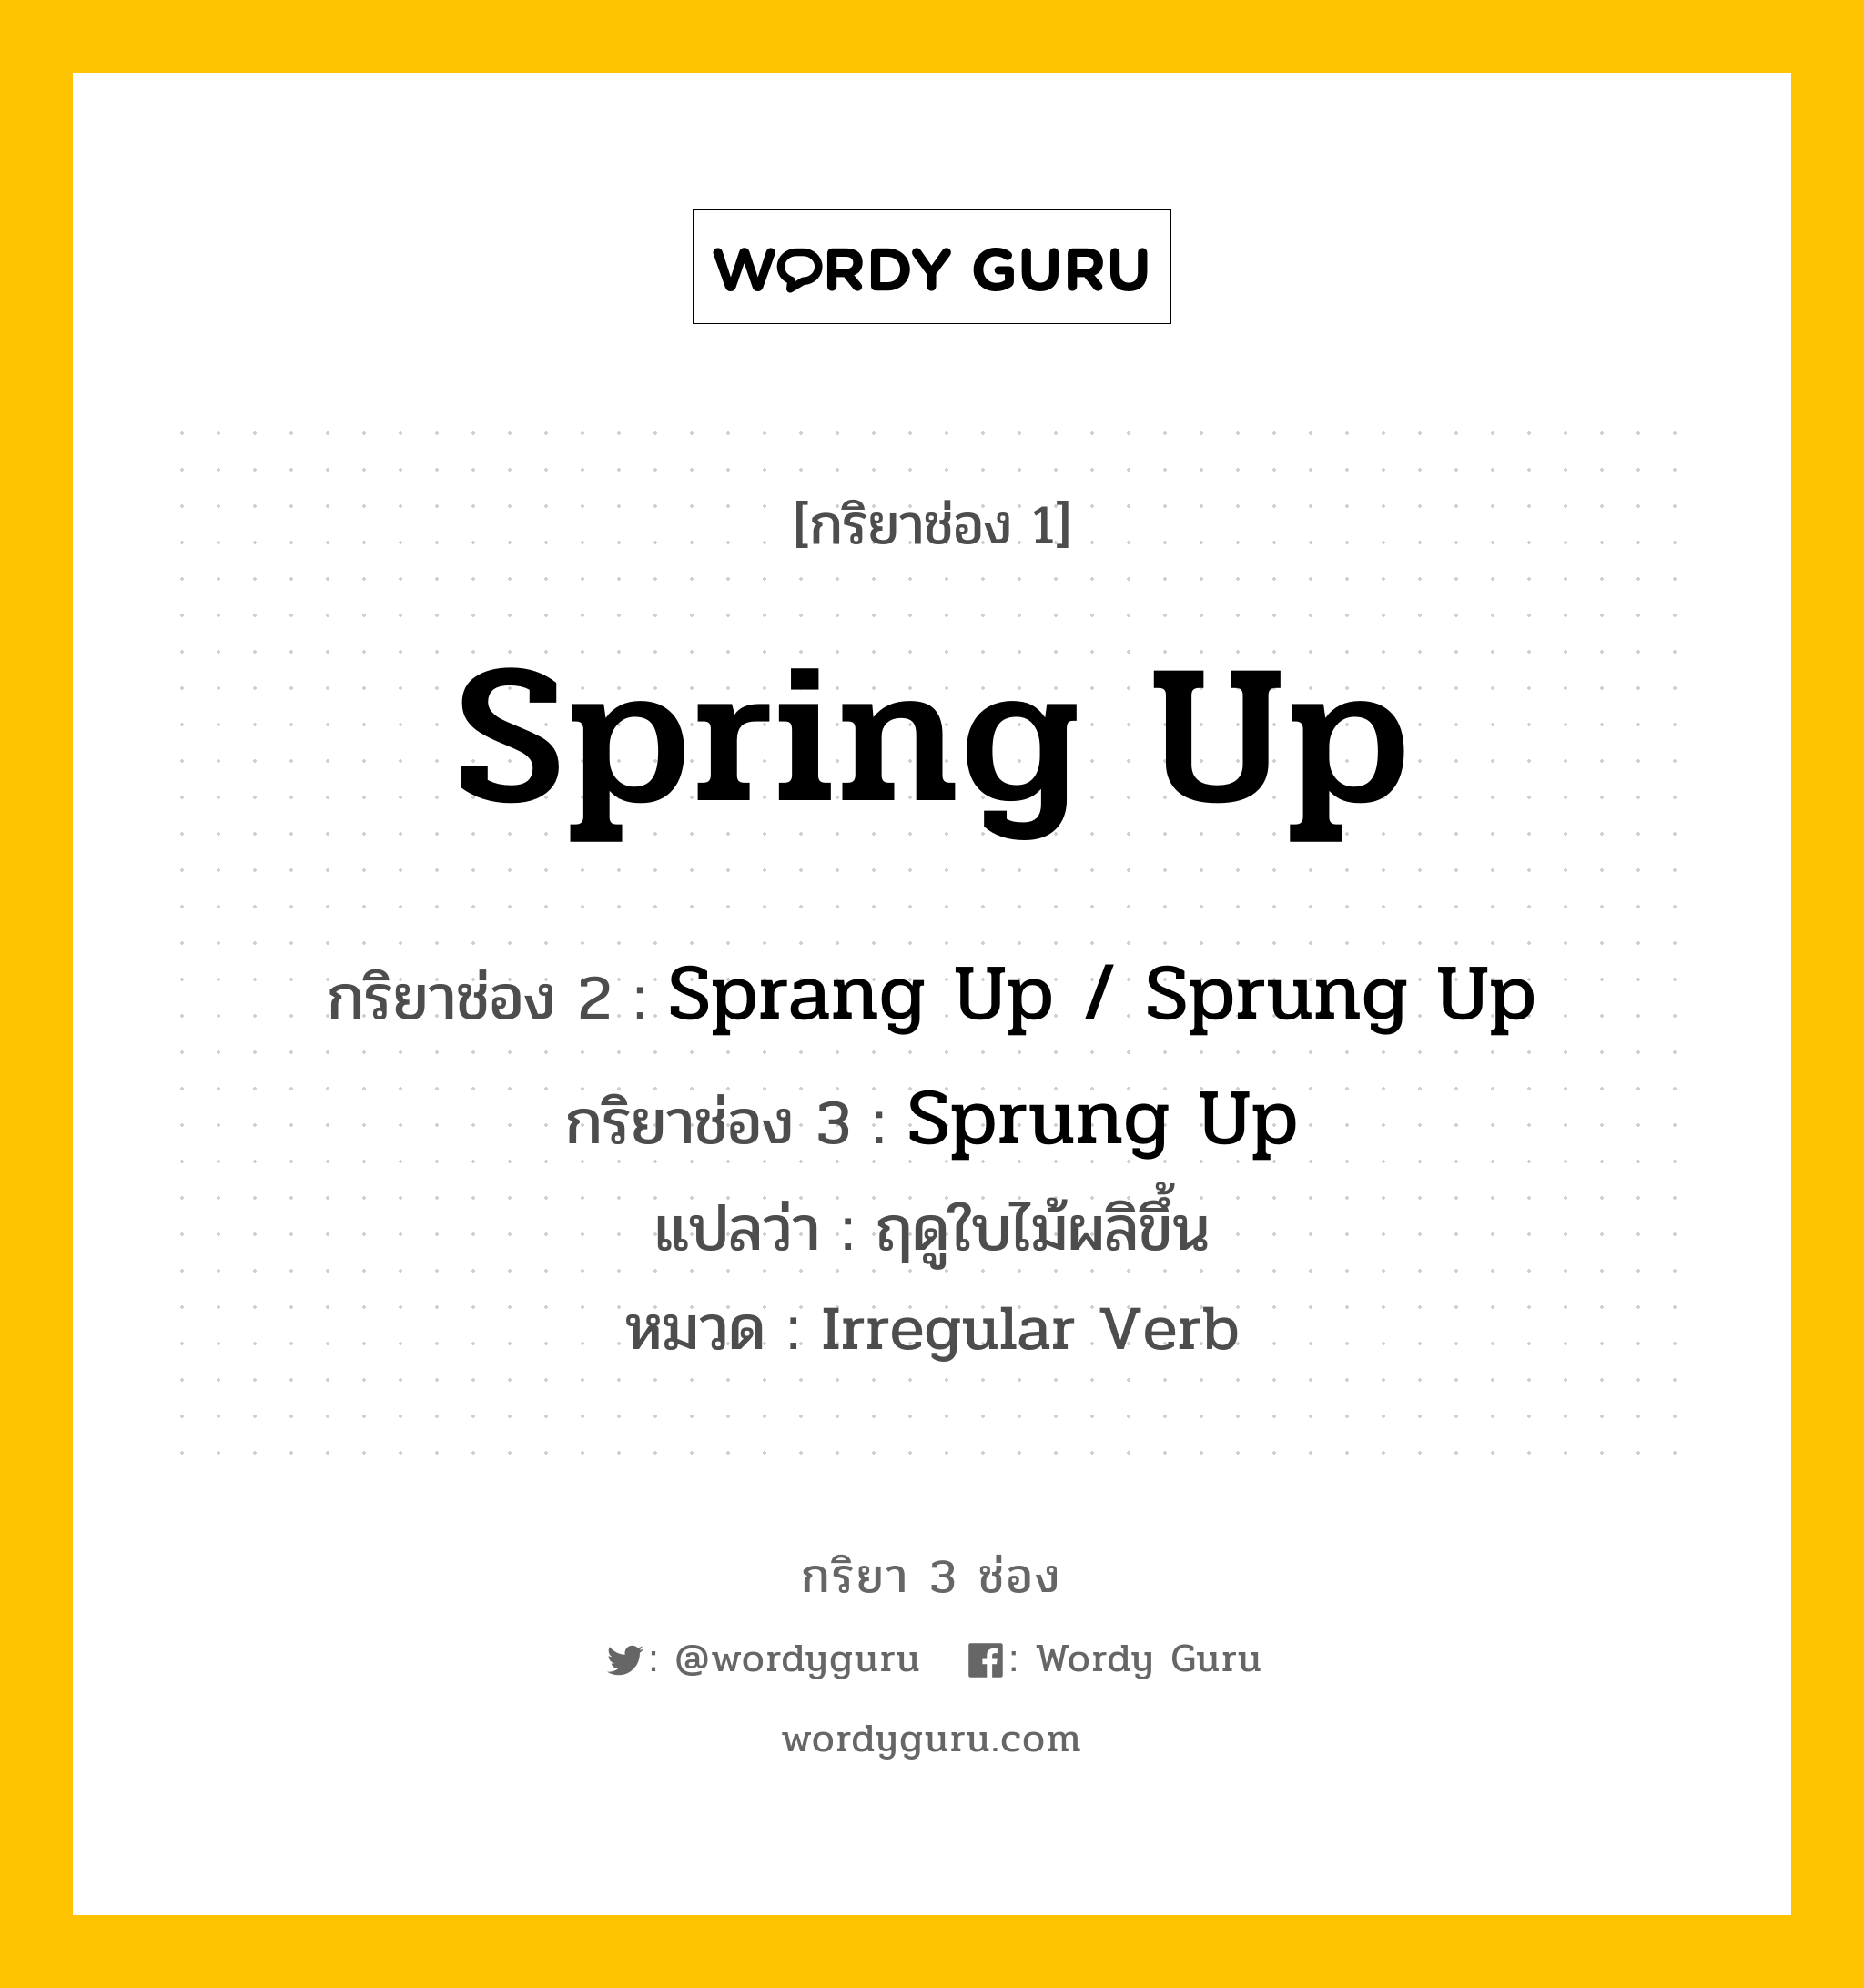 กริยา 3 ช่อง ของ Spring Up คืออะไร?, กริยาช่อง 1 Spring Up กริยาช่อง 2 Sprang Up / Sprung Up กริยาช่อง 3 Sprung Up แปลว่า ฤดูใบไม้ผลิขึ้น หมวด Irregular Verb หมวด Irregular Verb